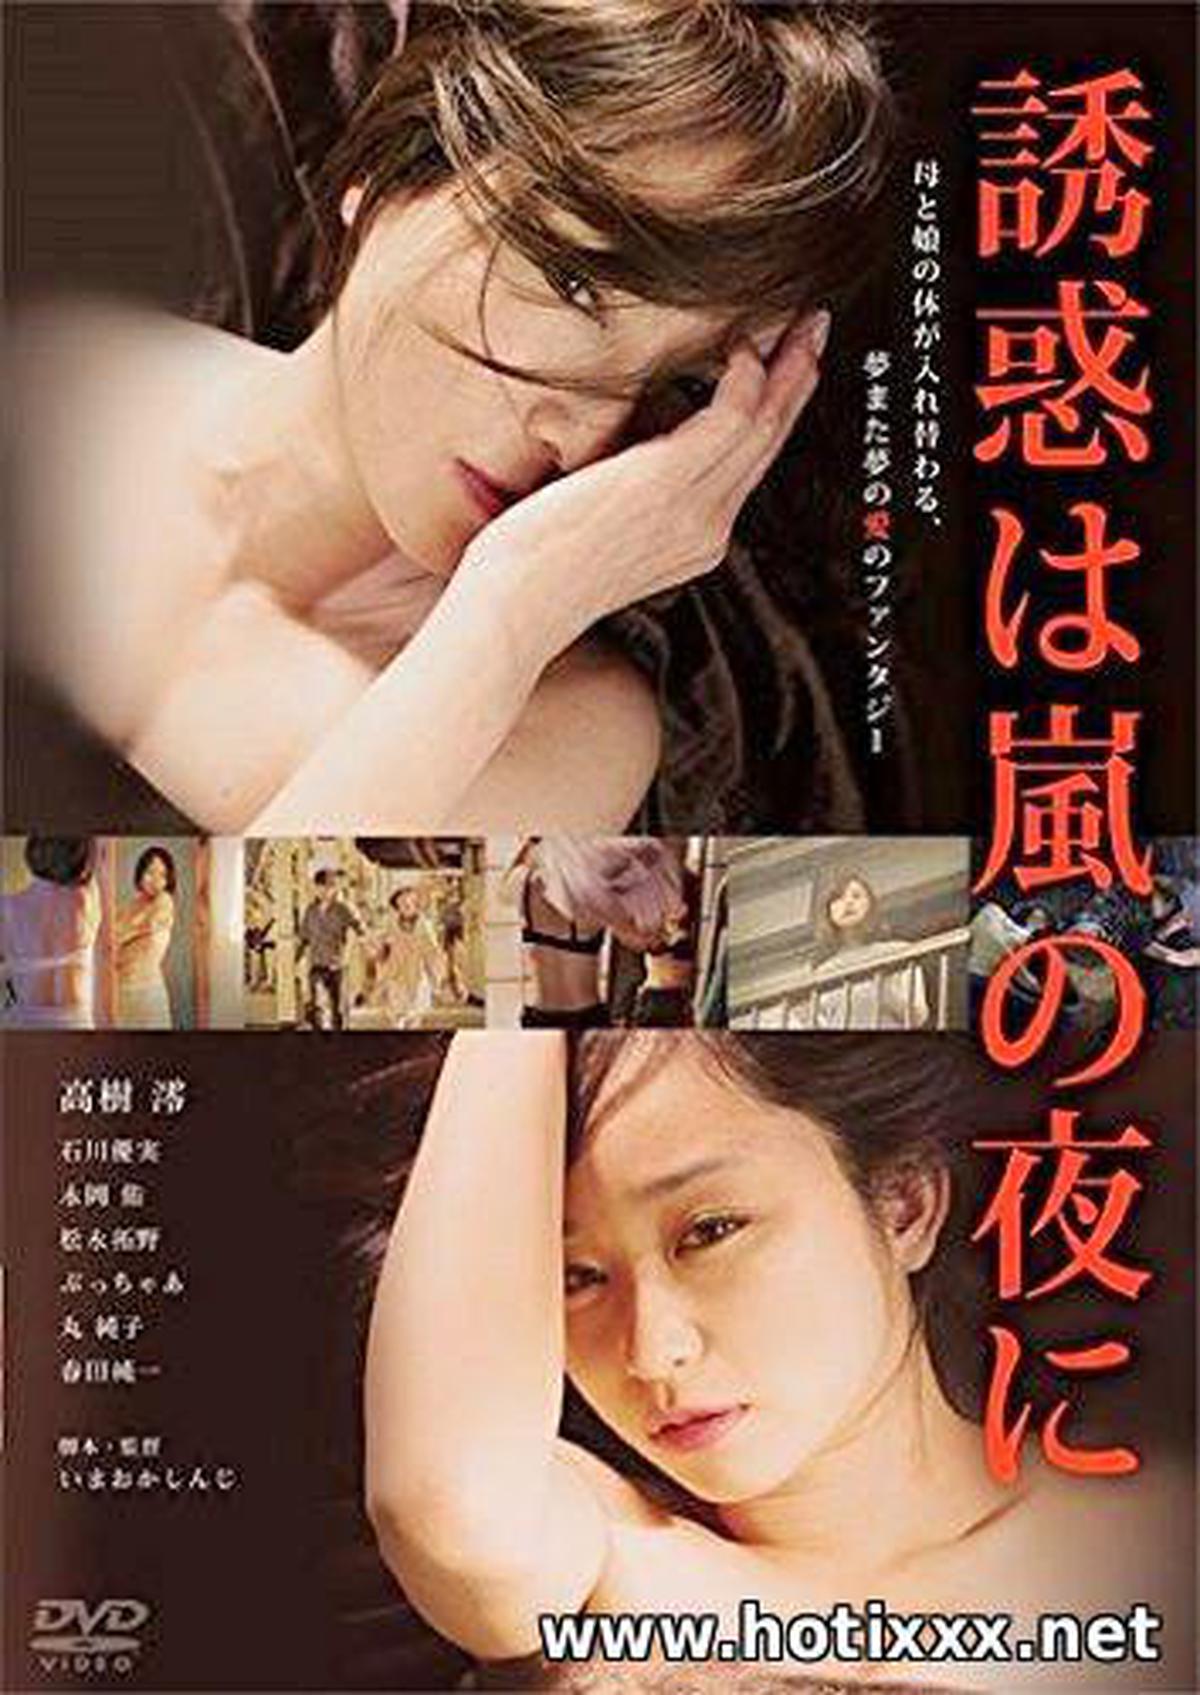 誘惑 は 嵐 の 夜 に / Yuwaku ha arashi no yoru ni / La tentación llegó en una noche tormentosa (2016)